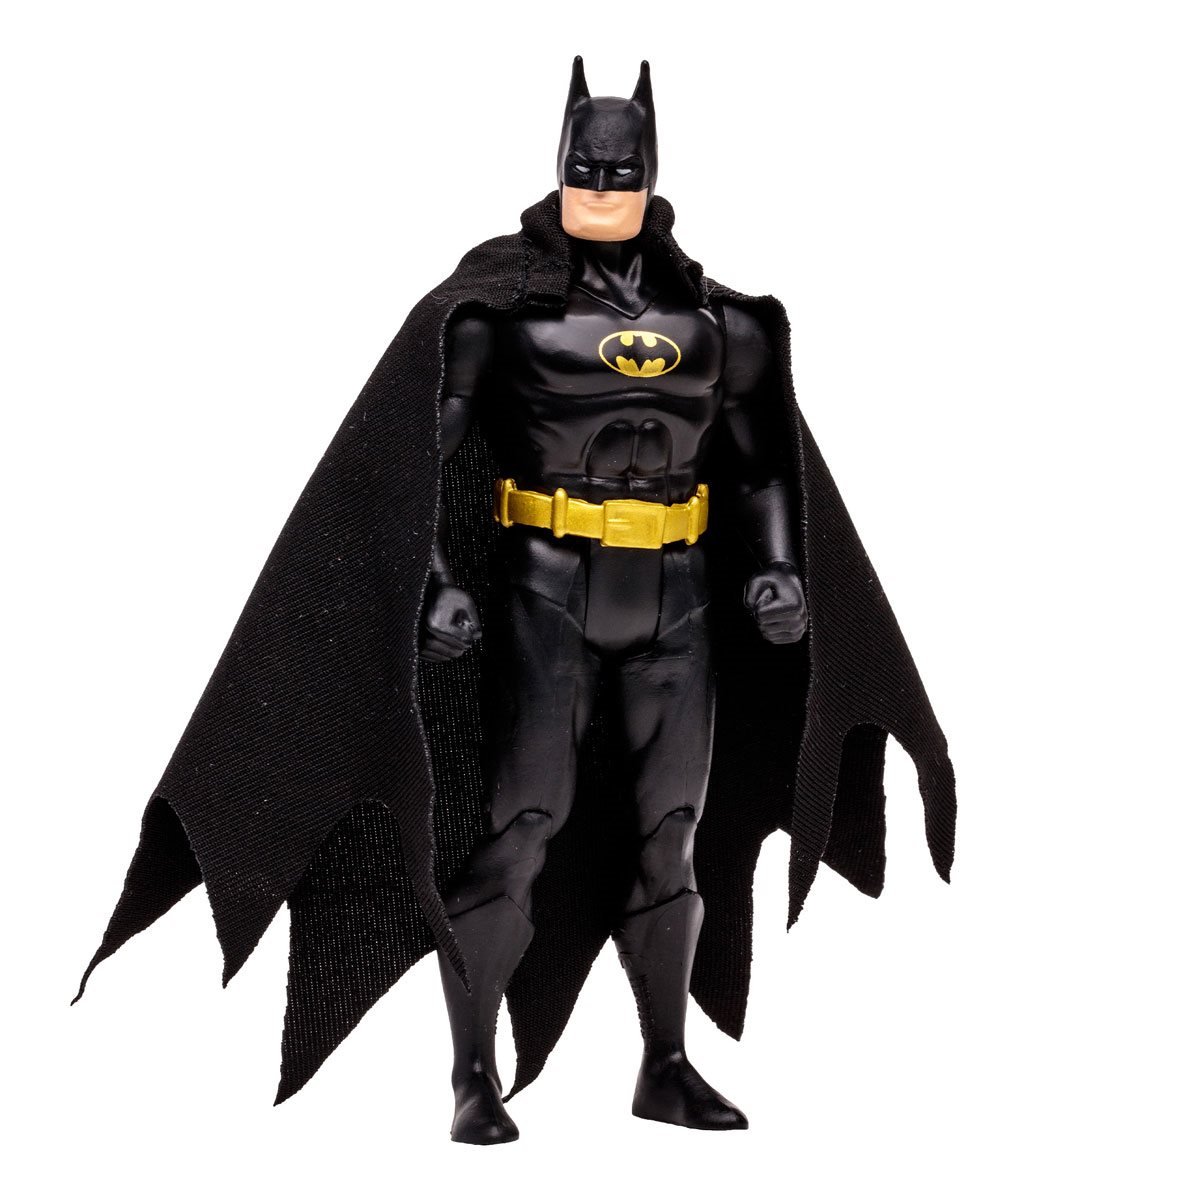 MCFARLANE DC Super Powers Wave 5 Batman Black Suit Variant 4-Inch Scale Action Figure